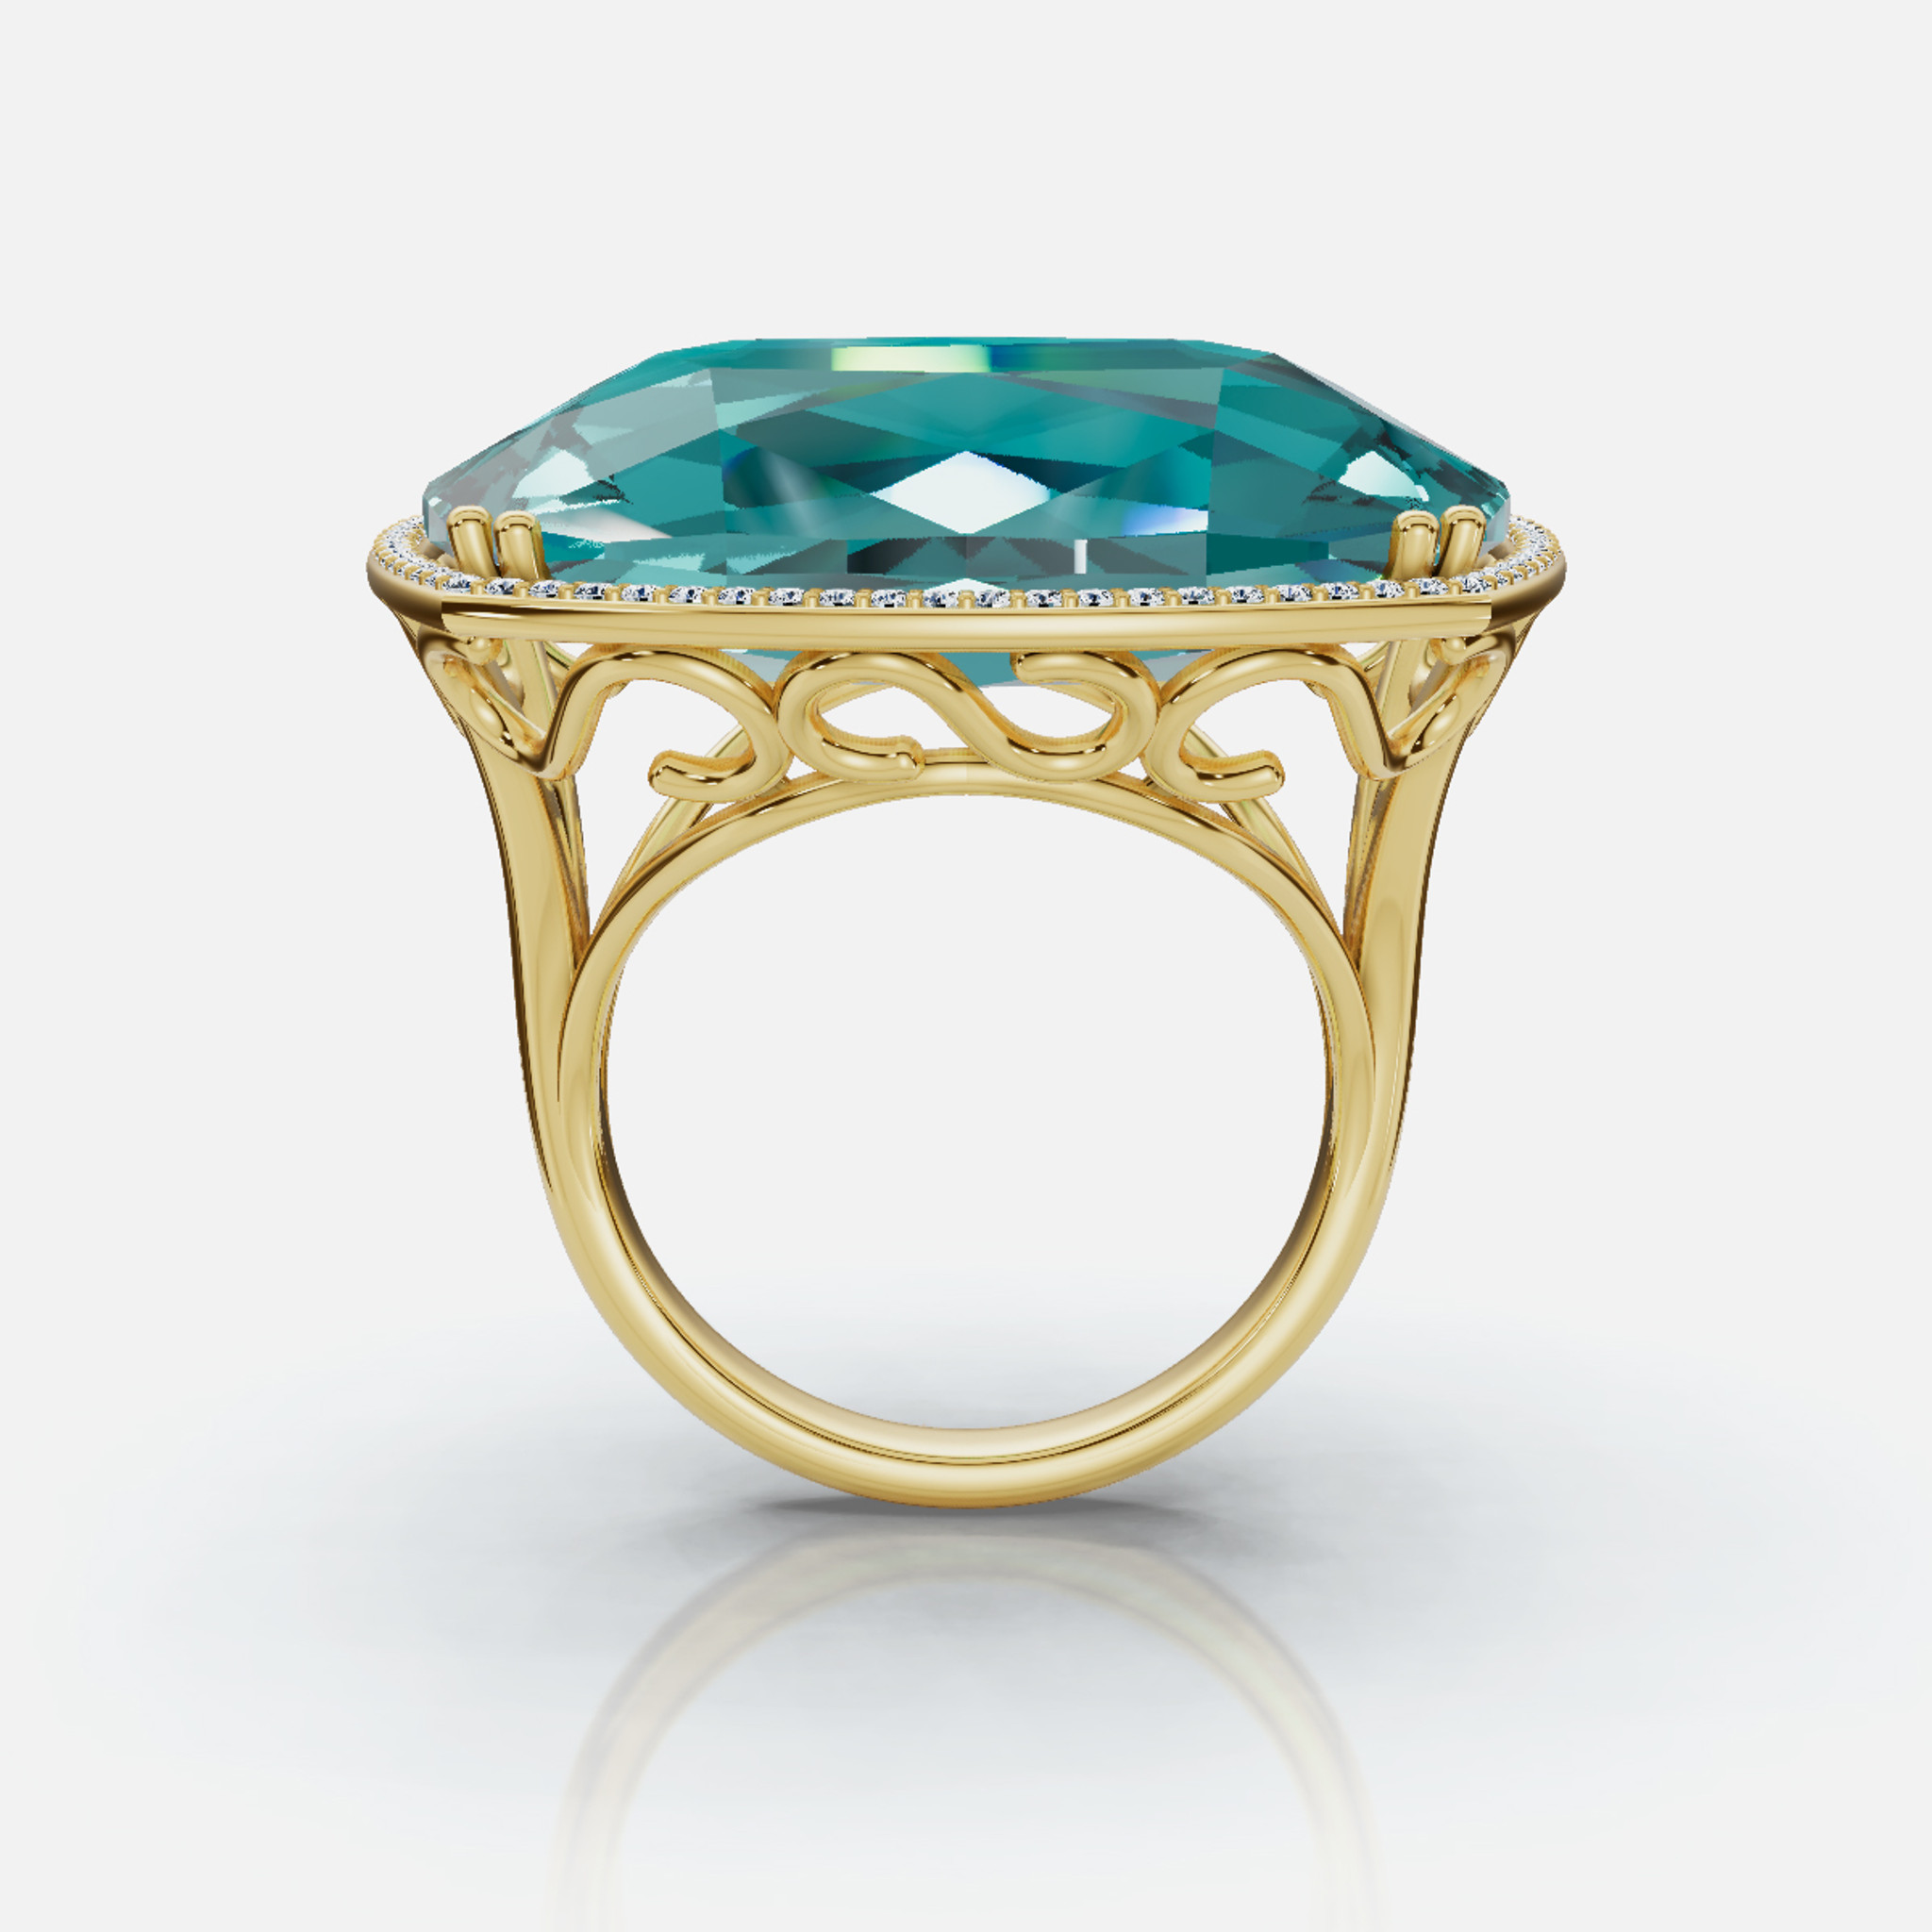 Perspectiva frontal del anillo de oro de 14 quilates con diamantes y topacio azul